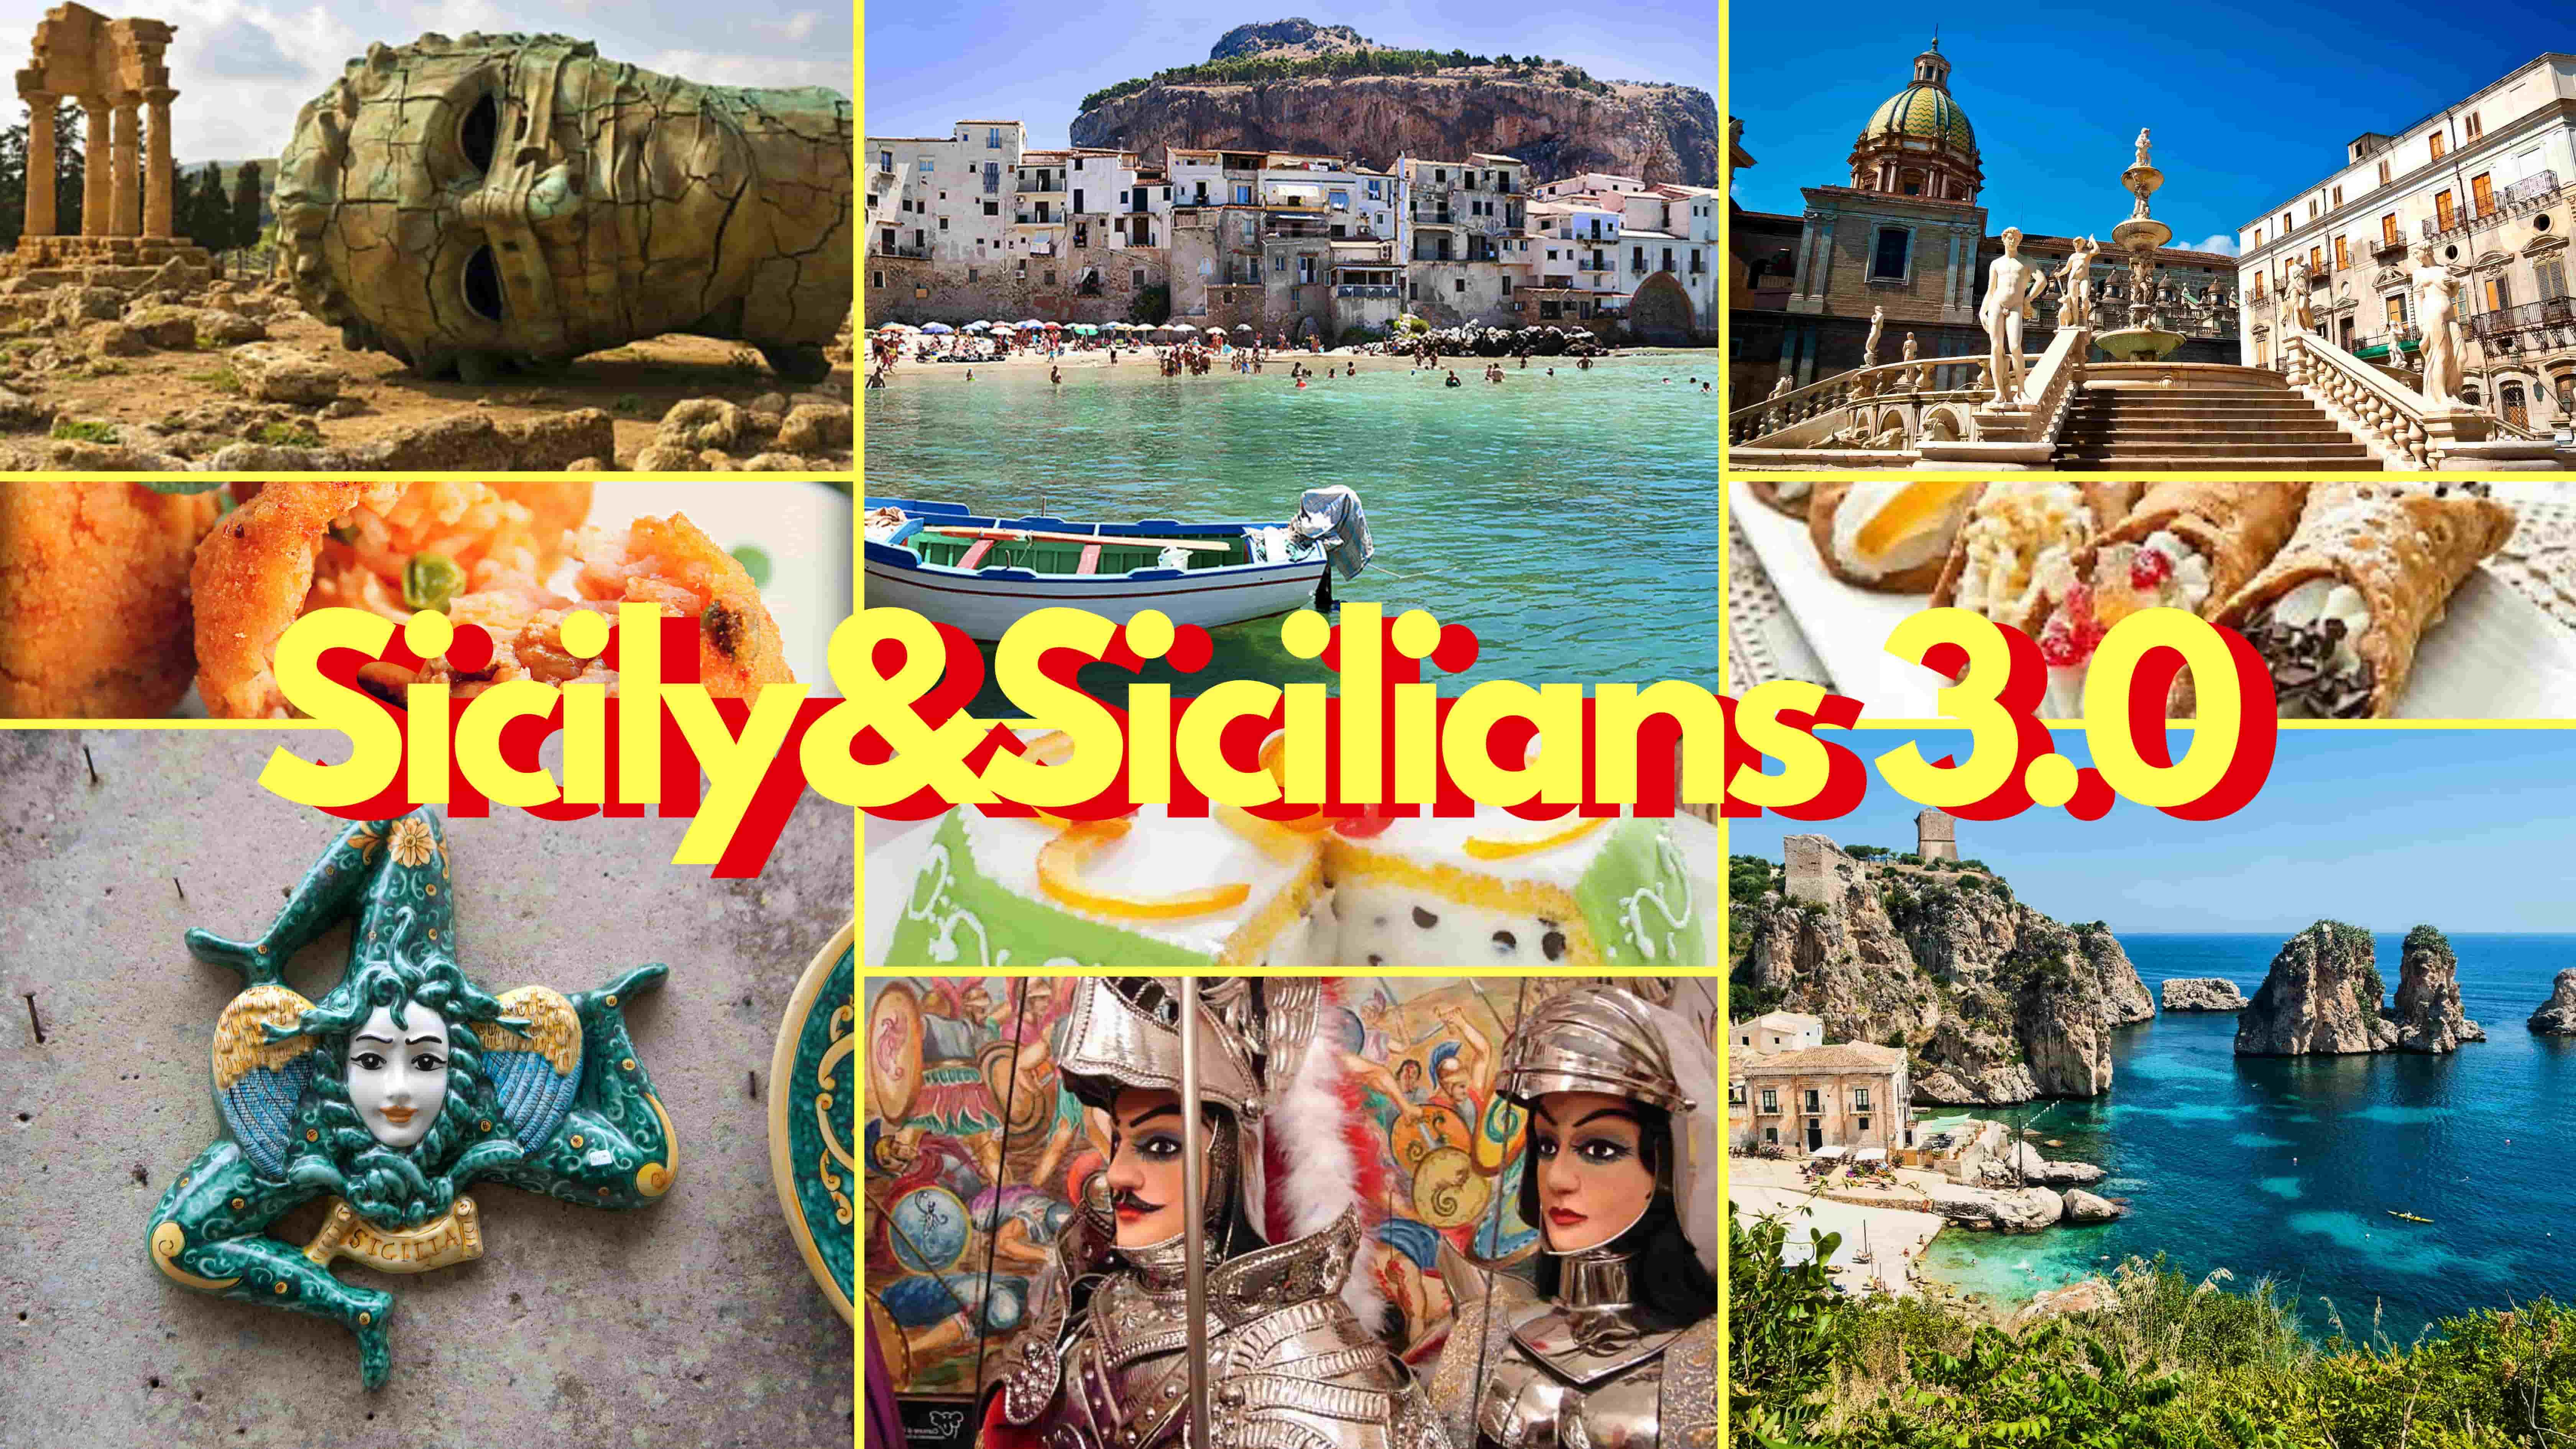 Putia Lab - Sicily & Sicilians 3.0